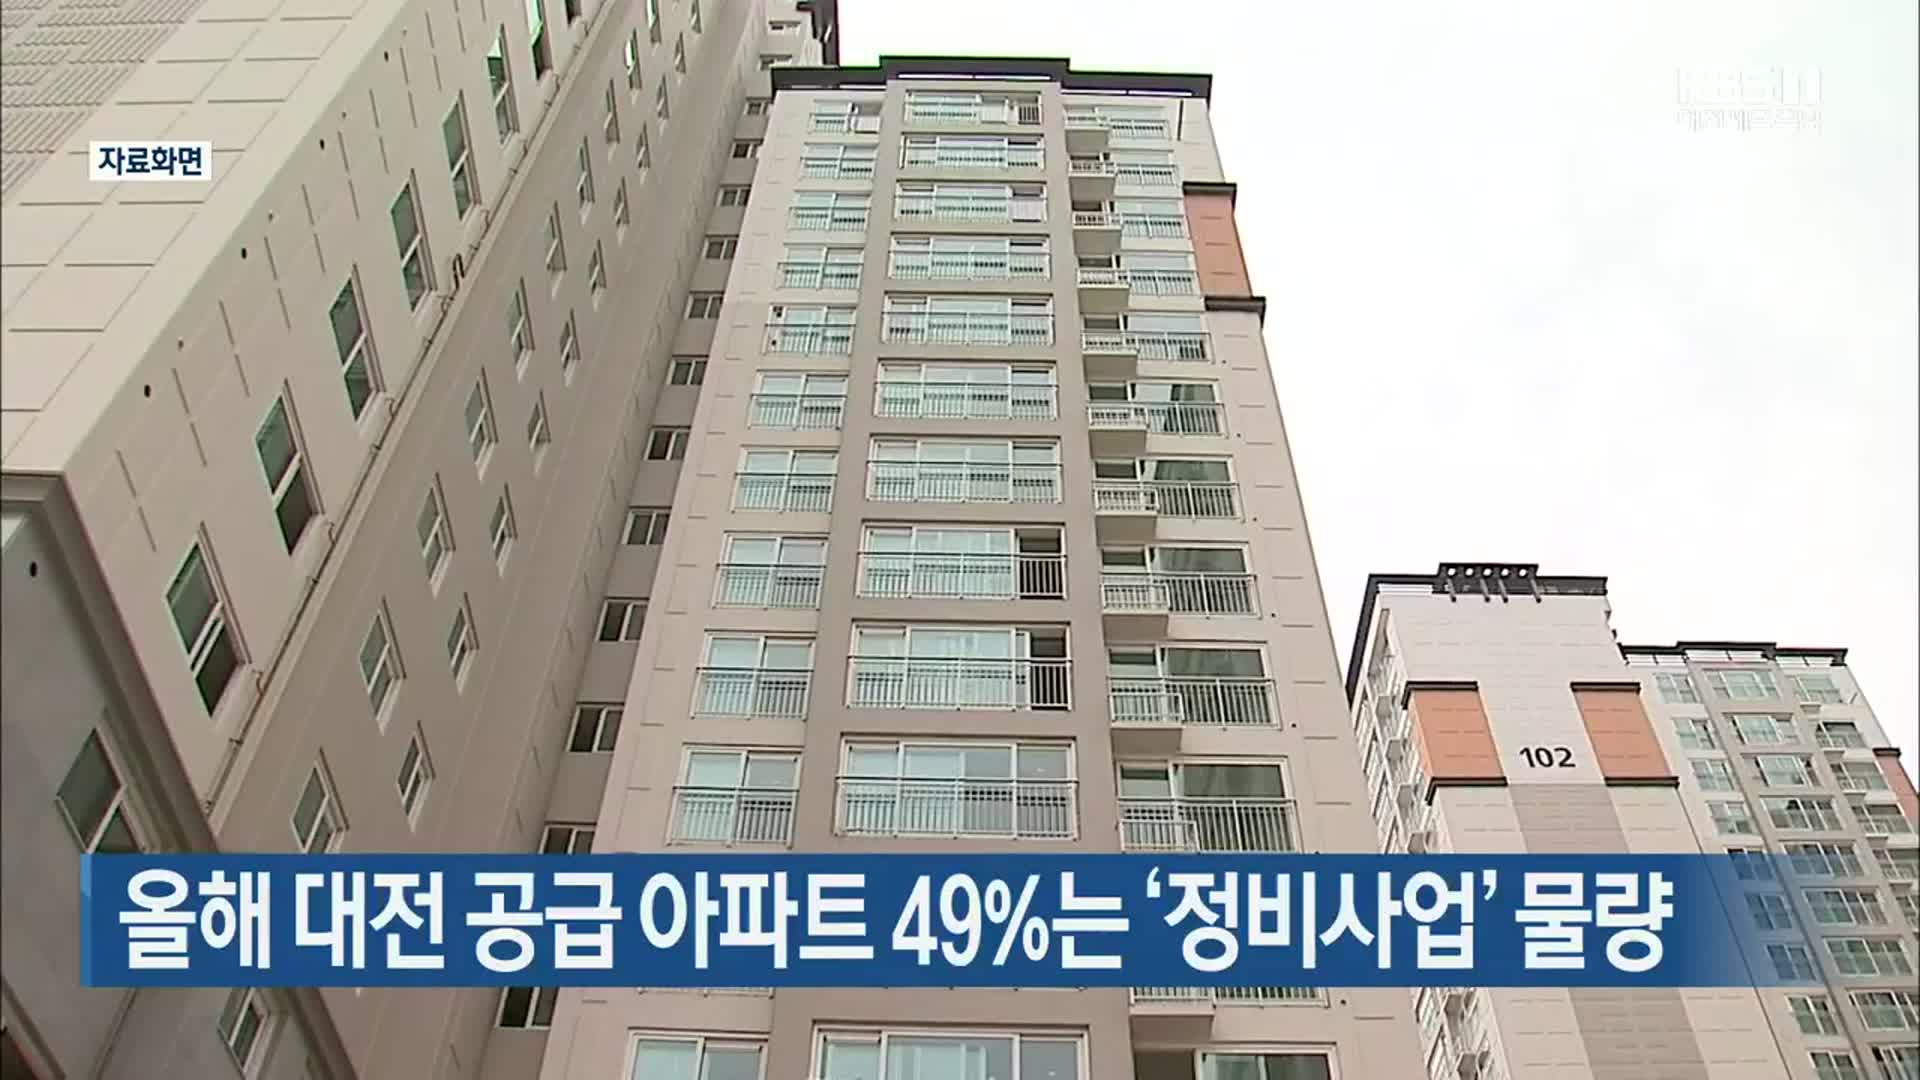 올해 대전 공급 아파트 49%는 ‘정비사업’ 물량